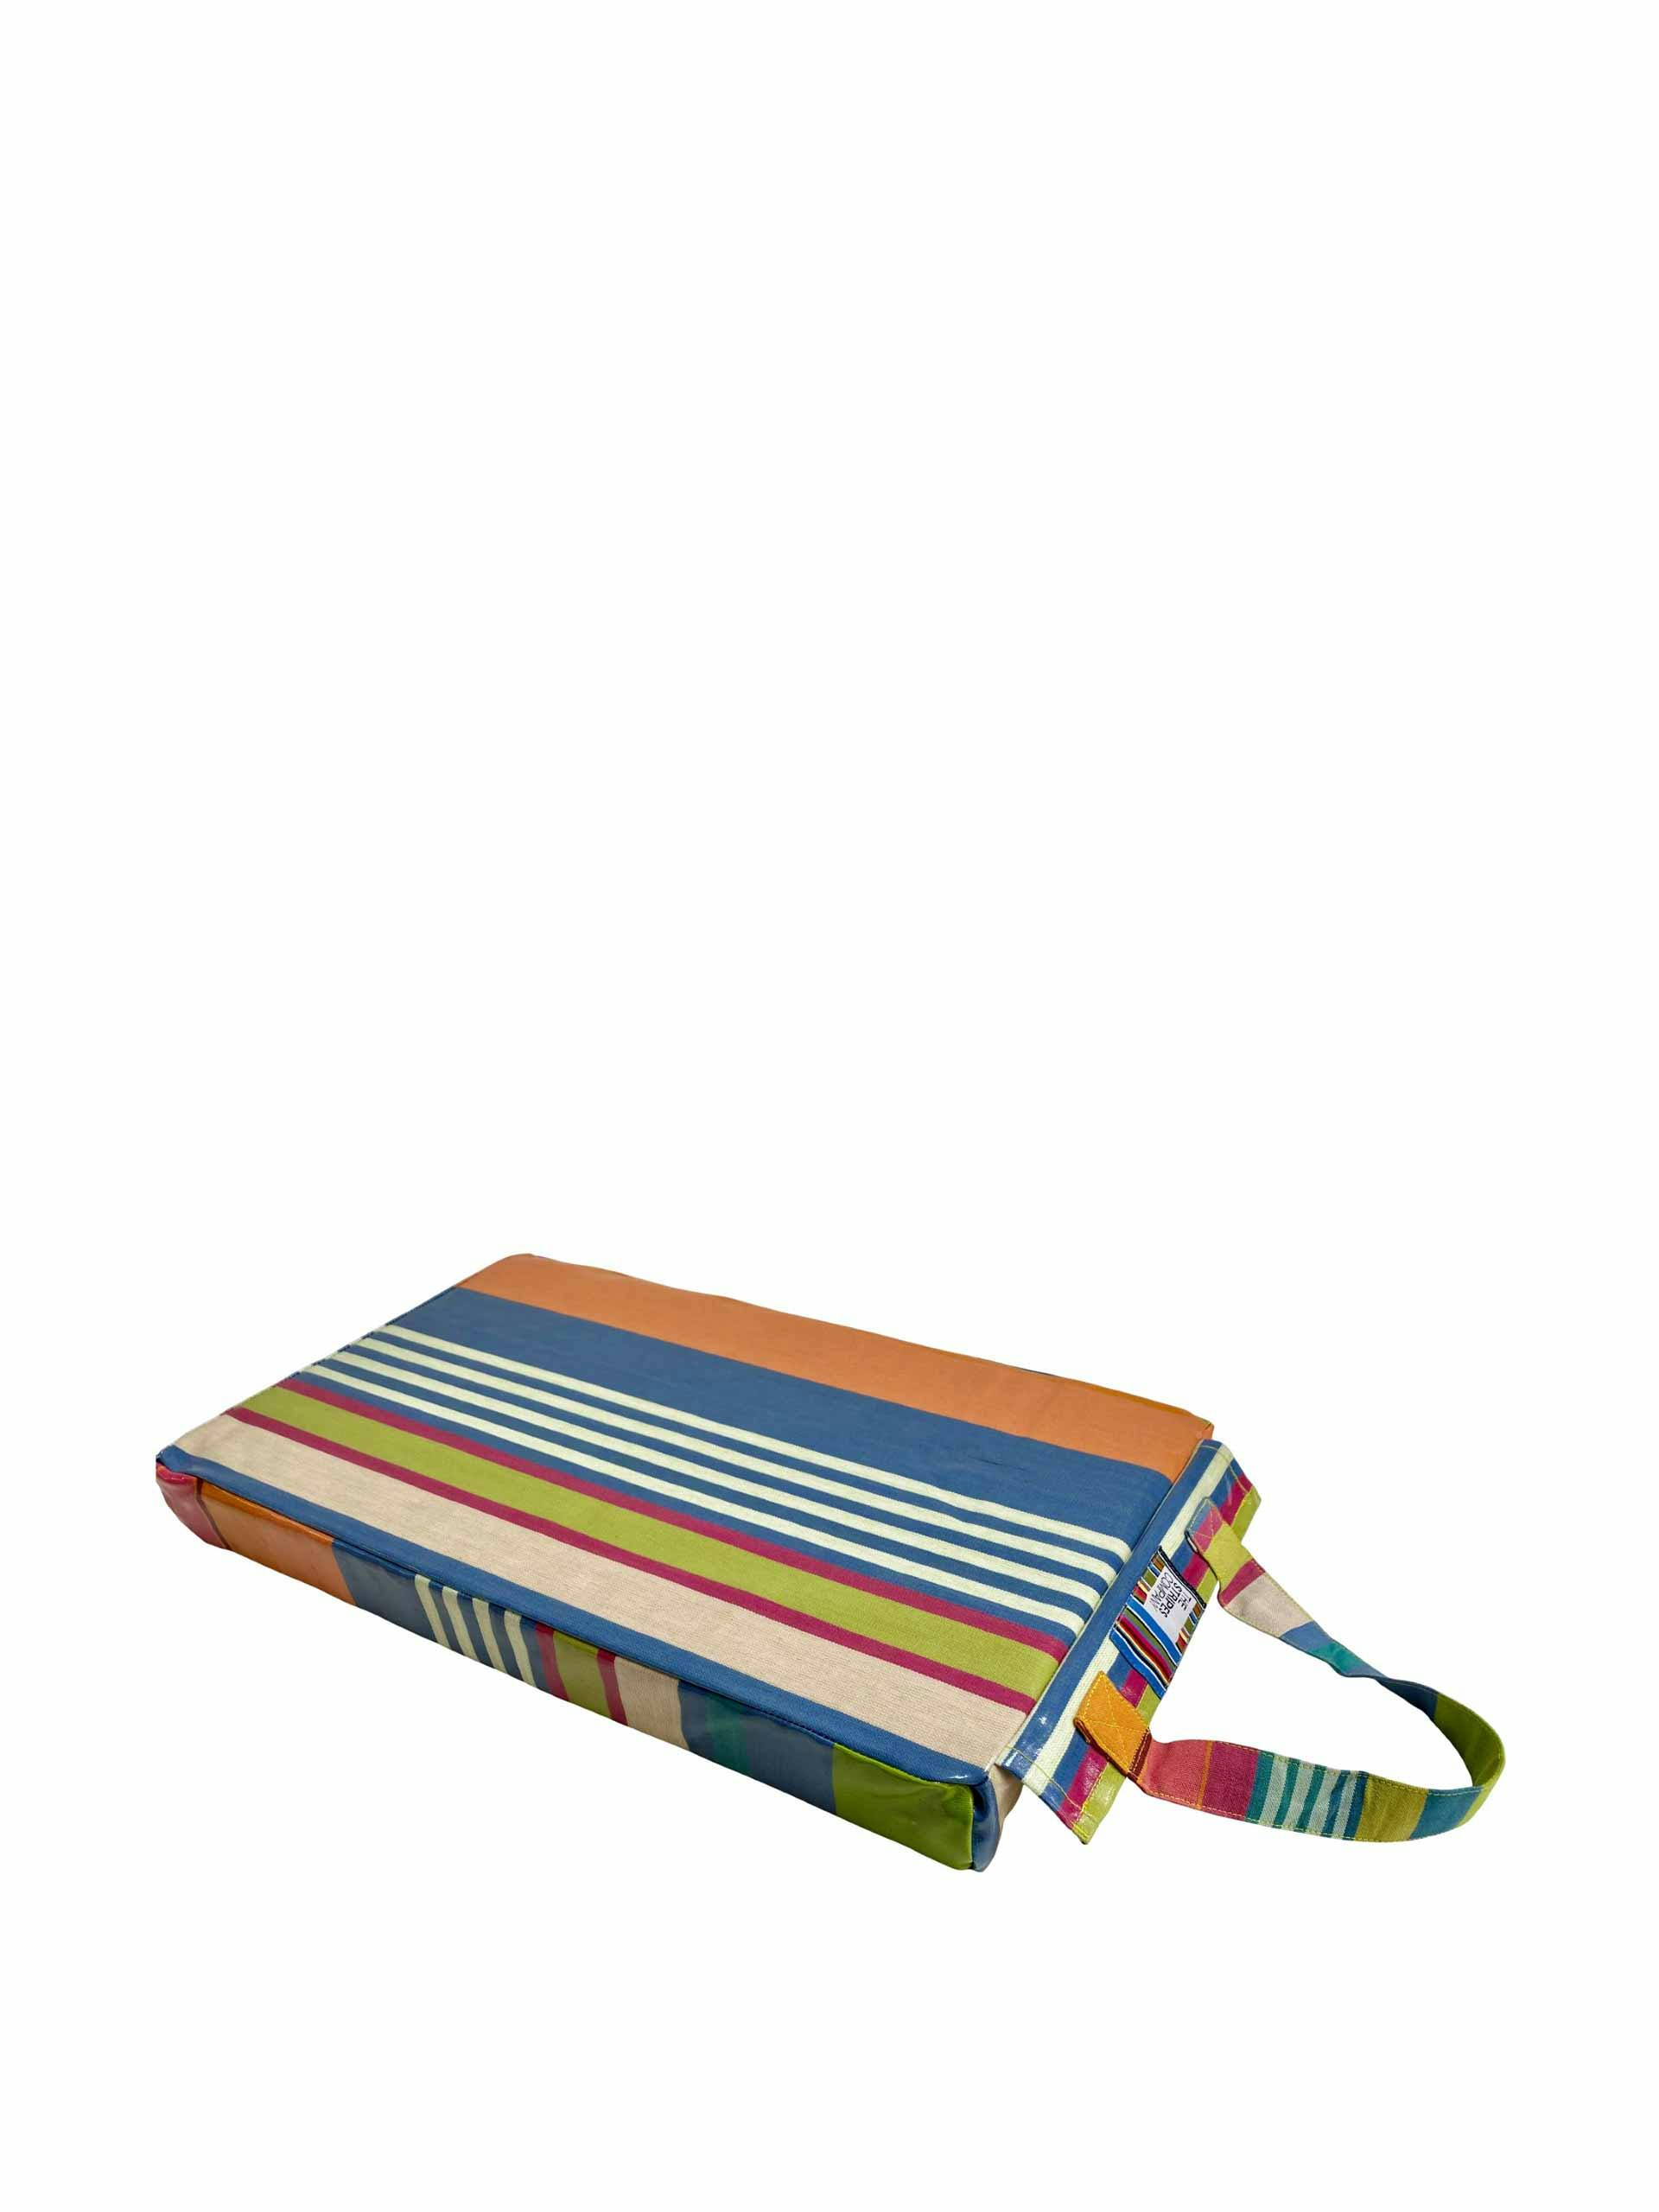 Multi-coloured striped cushion pad